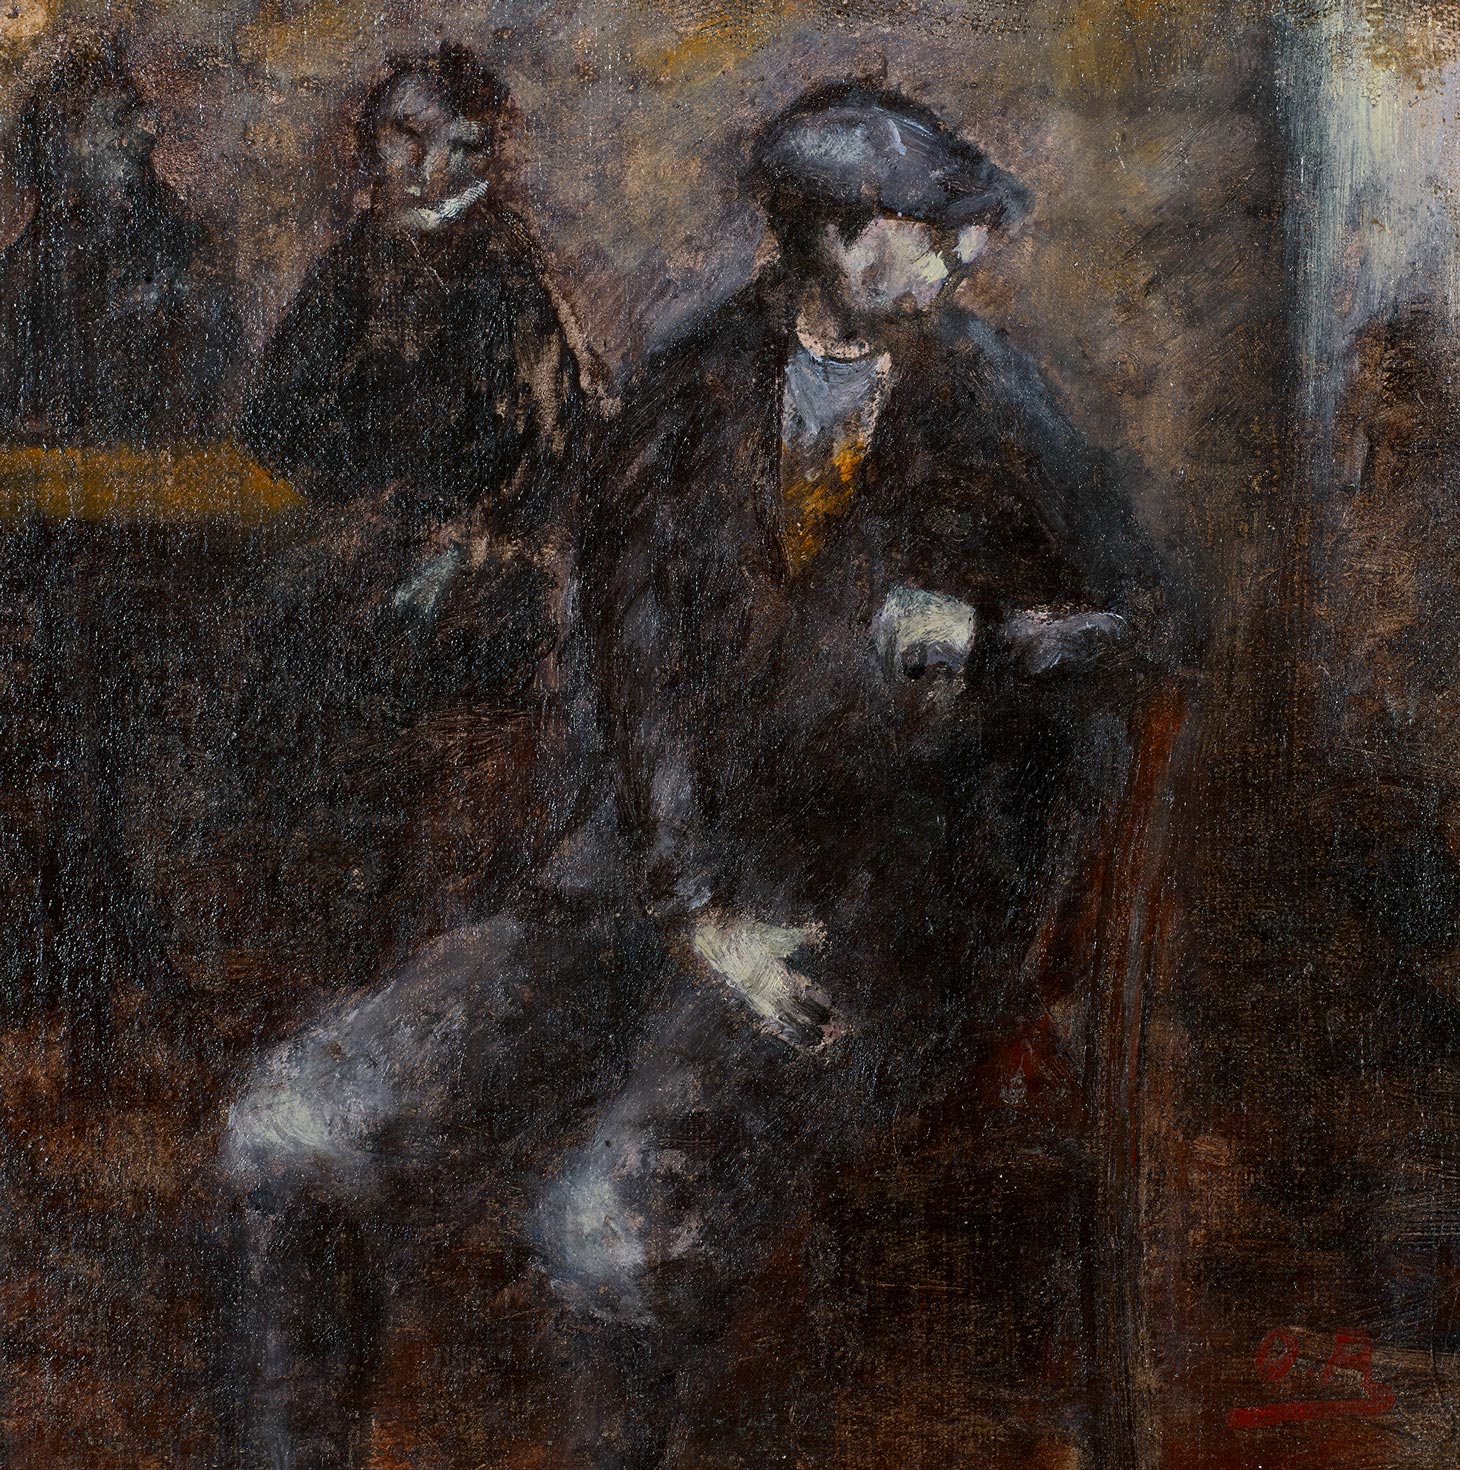 Ottone Rosai, Man Waiting, 1919